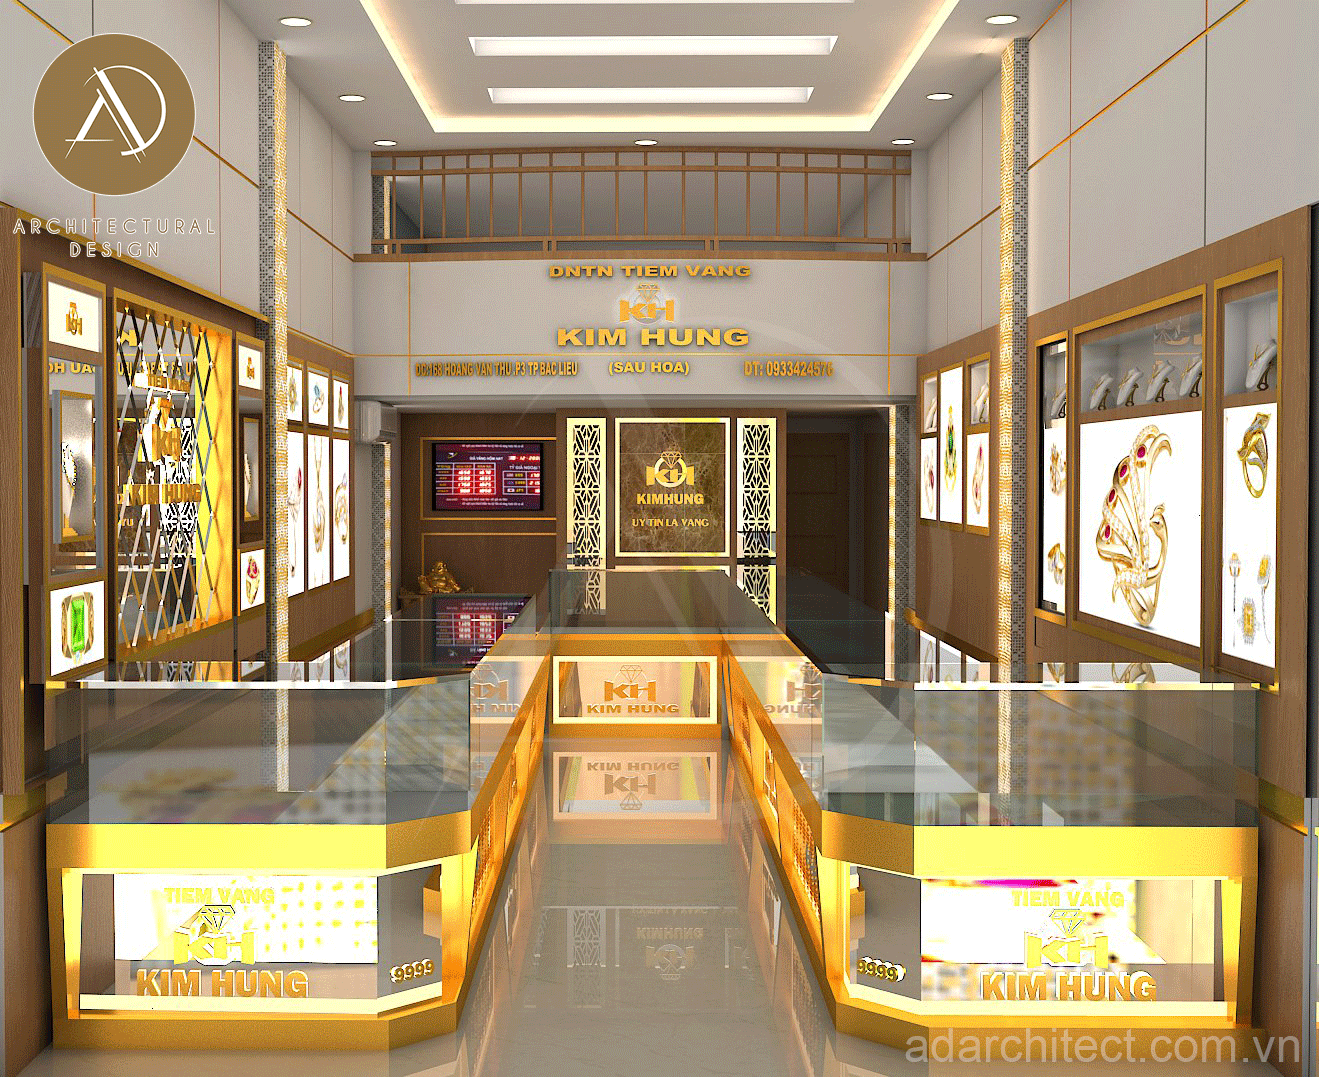 Thiết kế tiệm vàng: tủ trưng bày inox mạ vàng đúng chuẩn bắt sáng nổi bật nhất